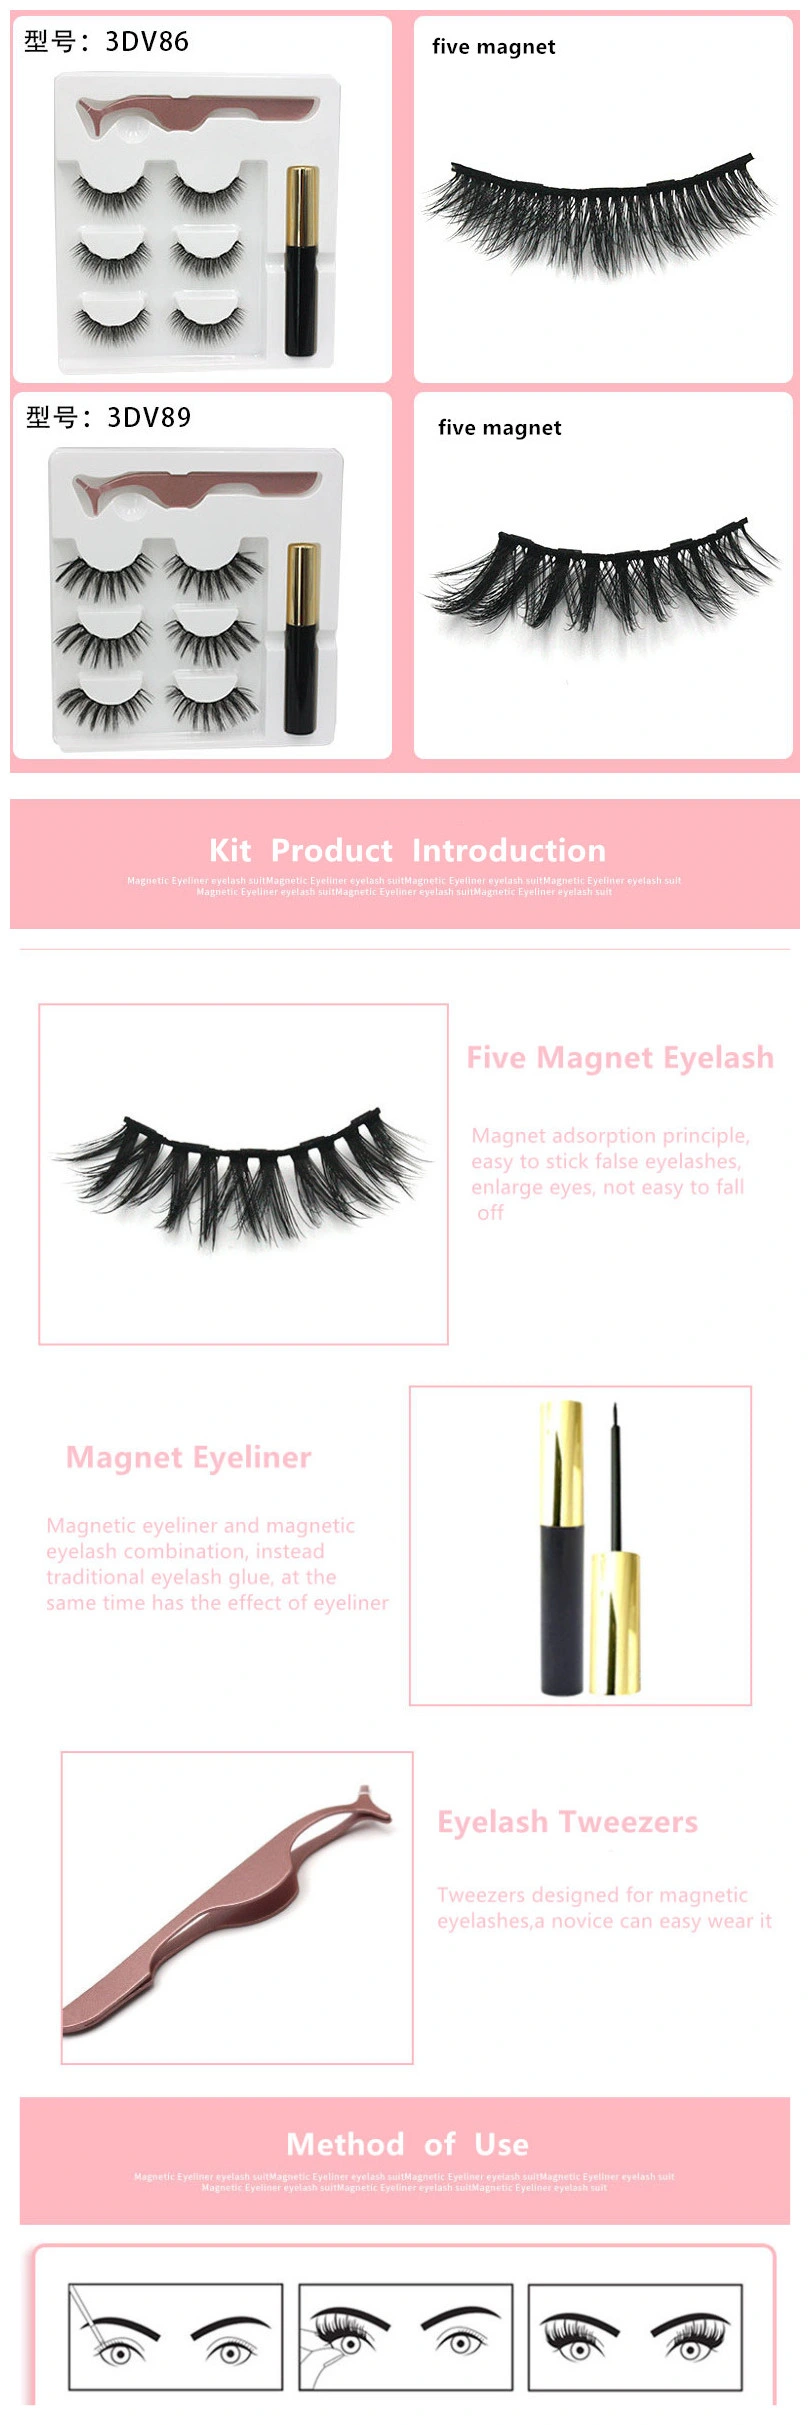 2020 Fashion Magnetic Eyeliner Eyelash Extension Mink Eyelashes Silk Lashes Wholesale False Eyelash Magnetic